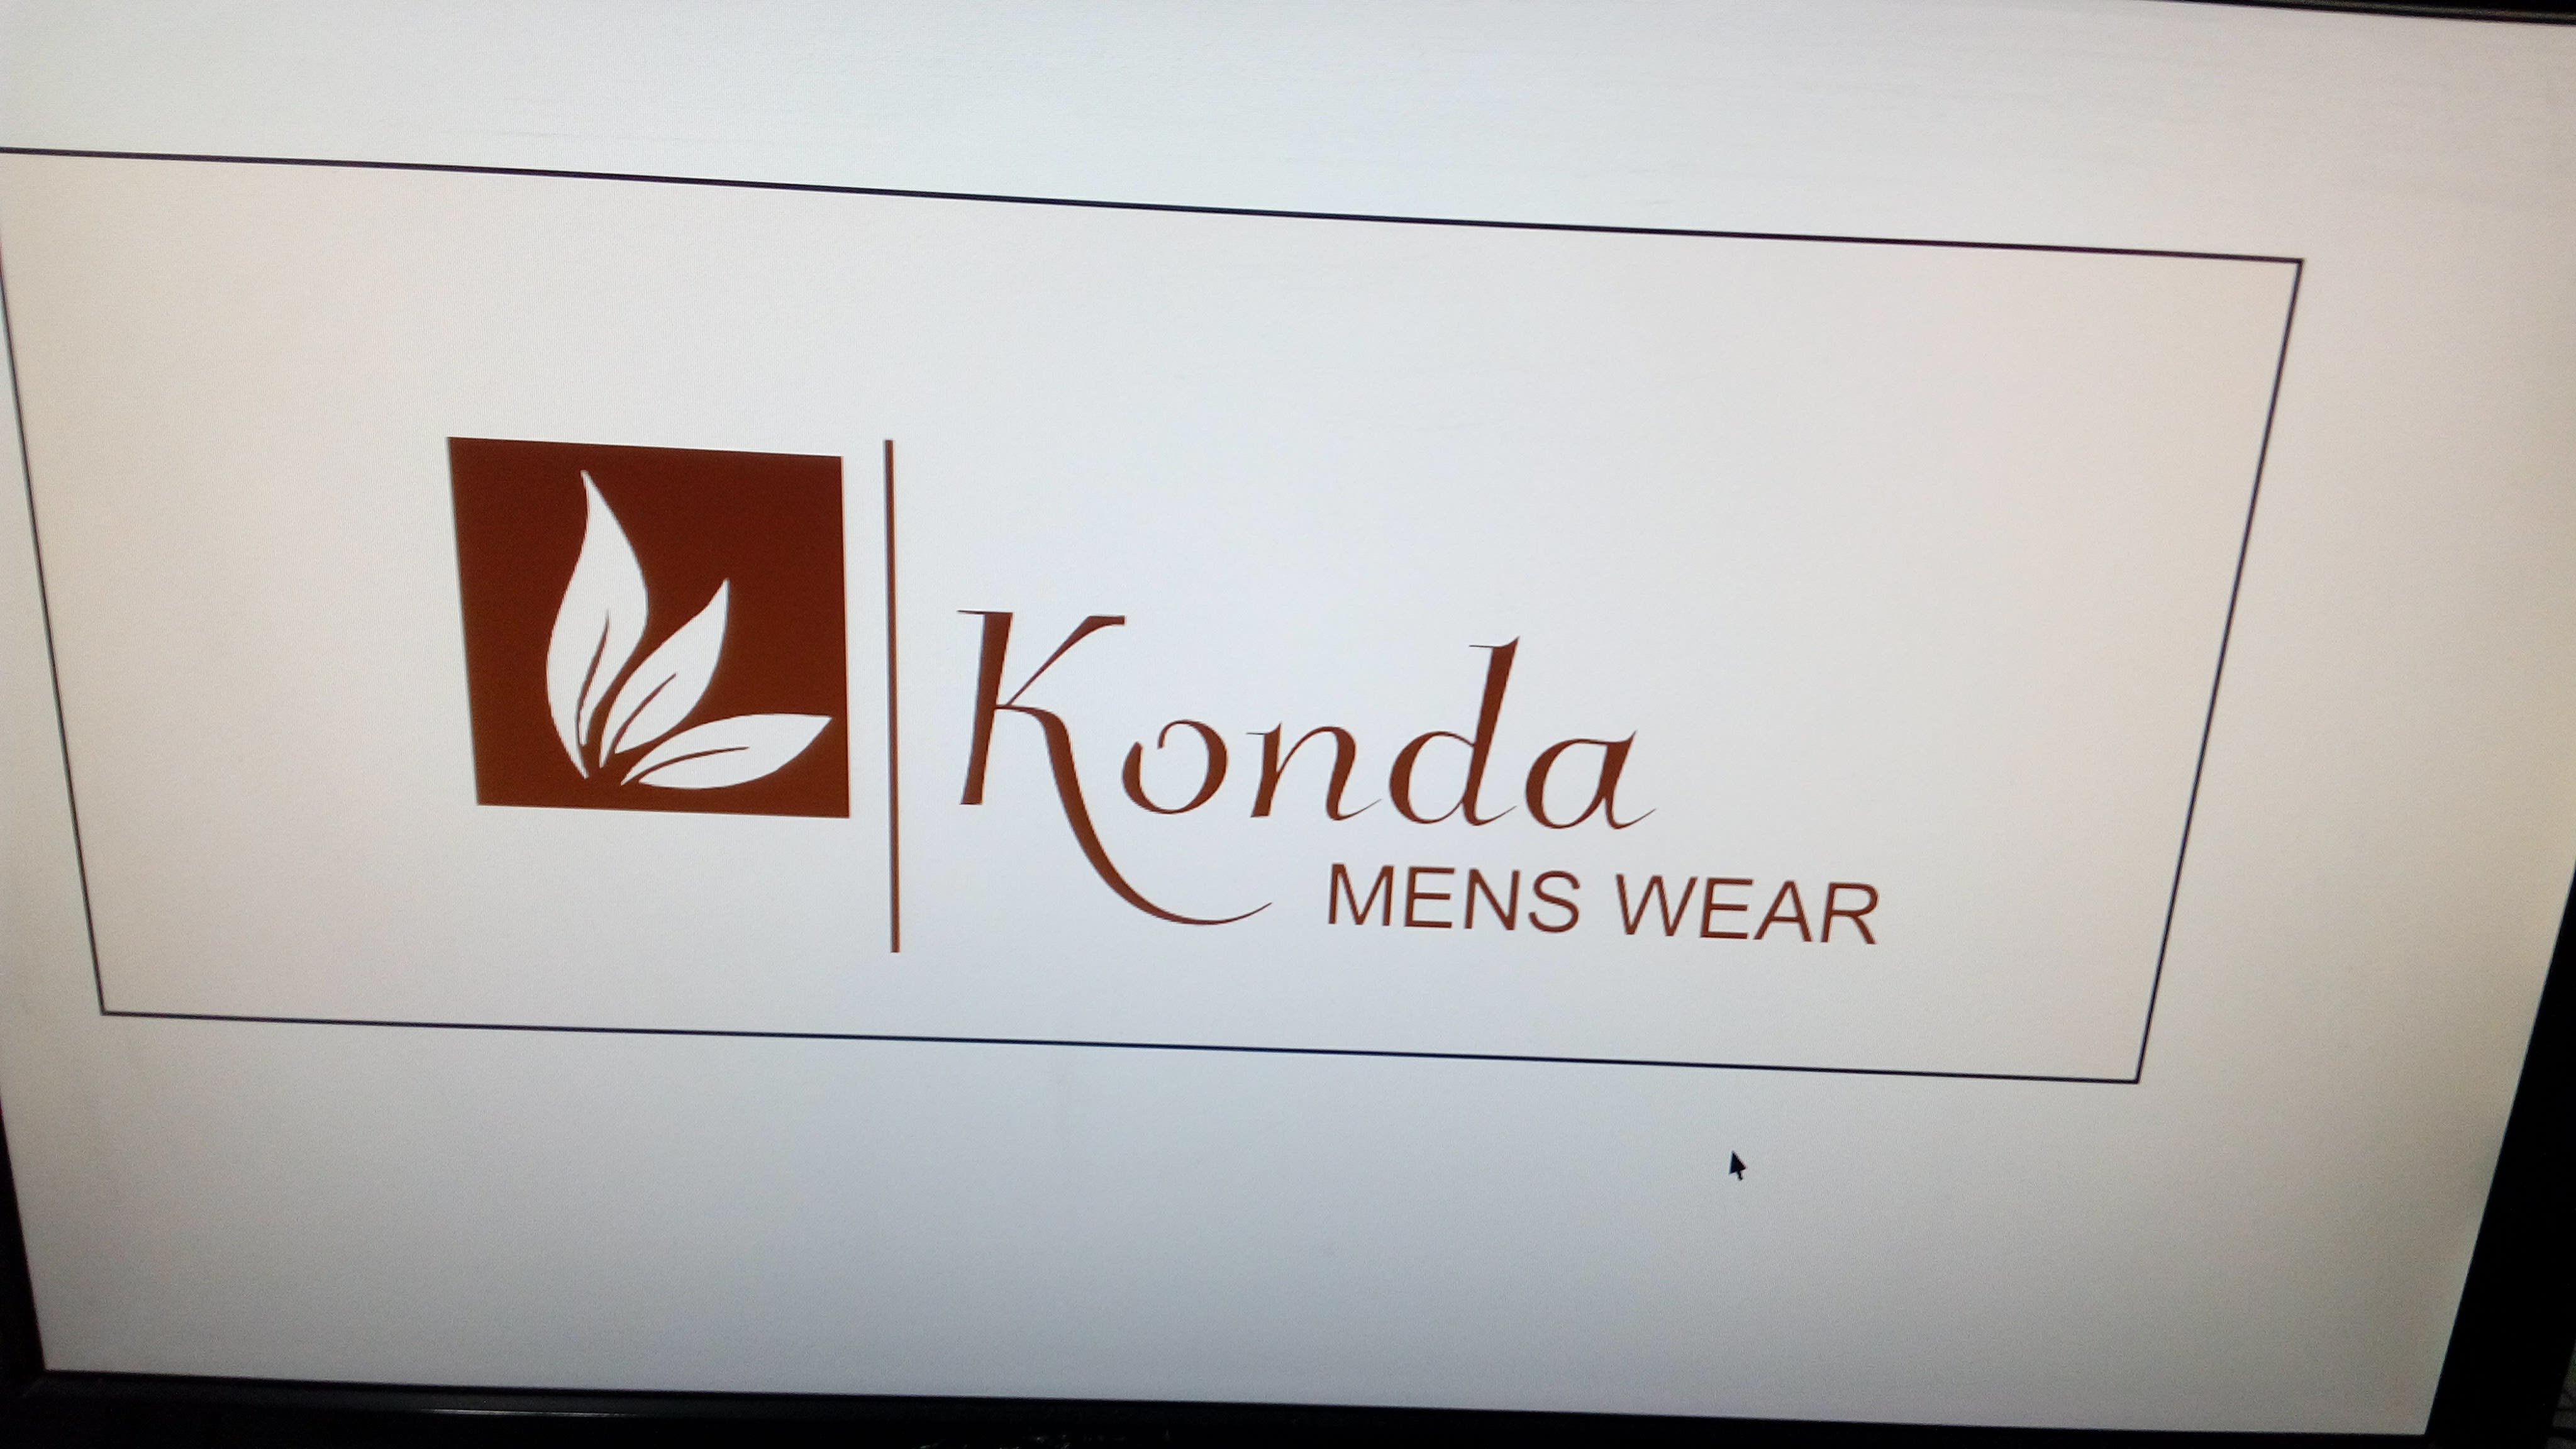 Konda Men's Wear